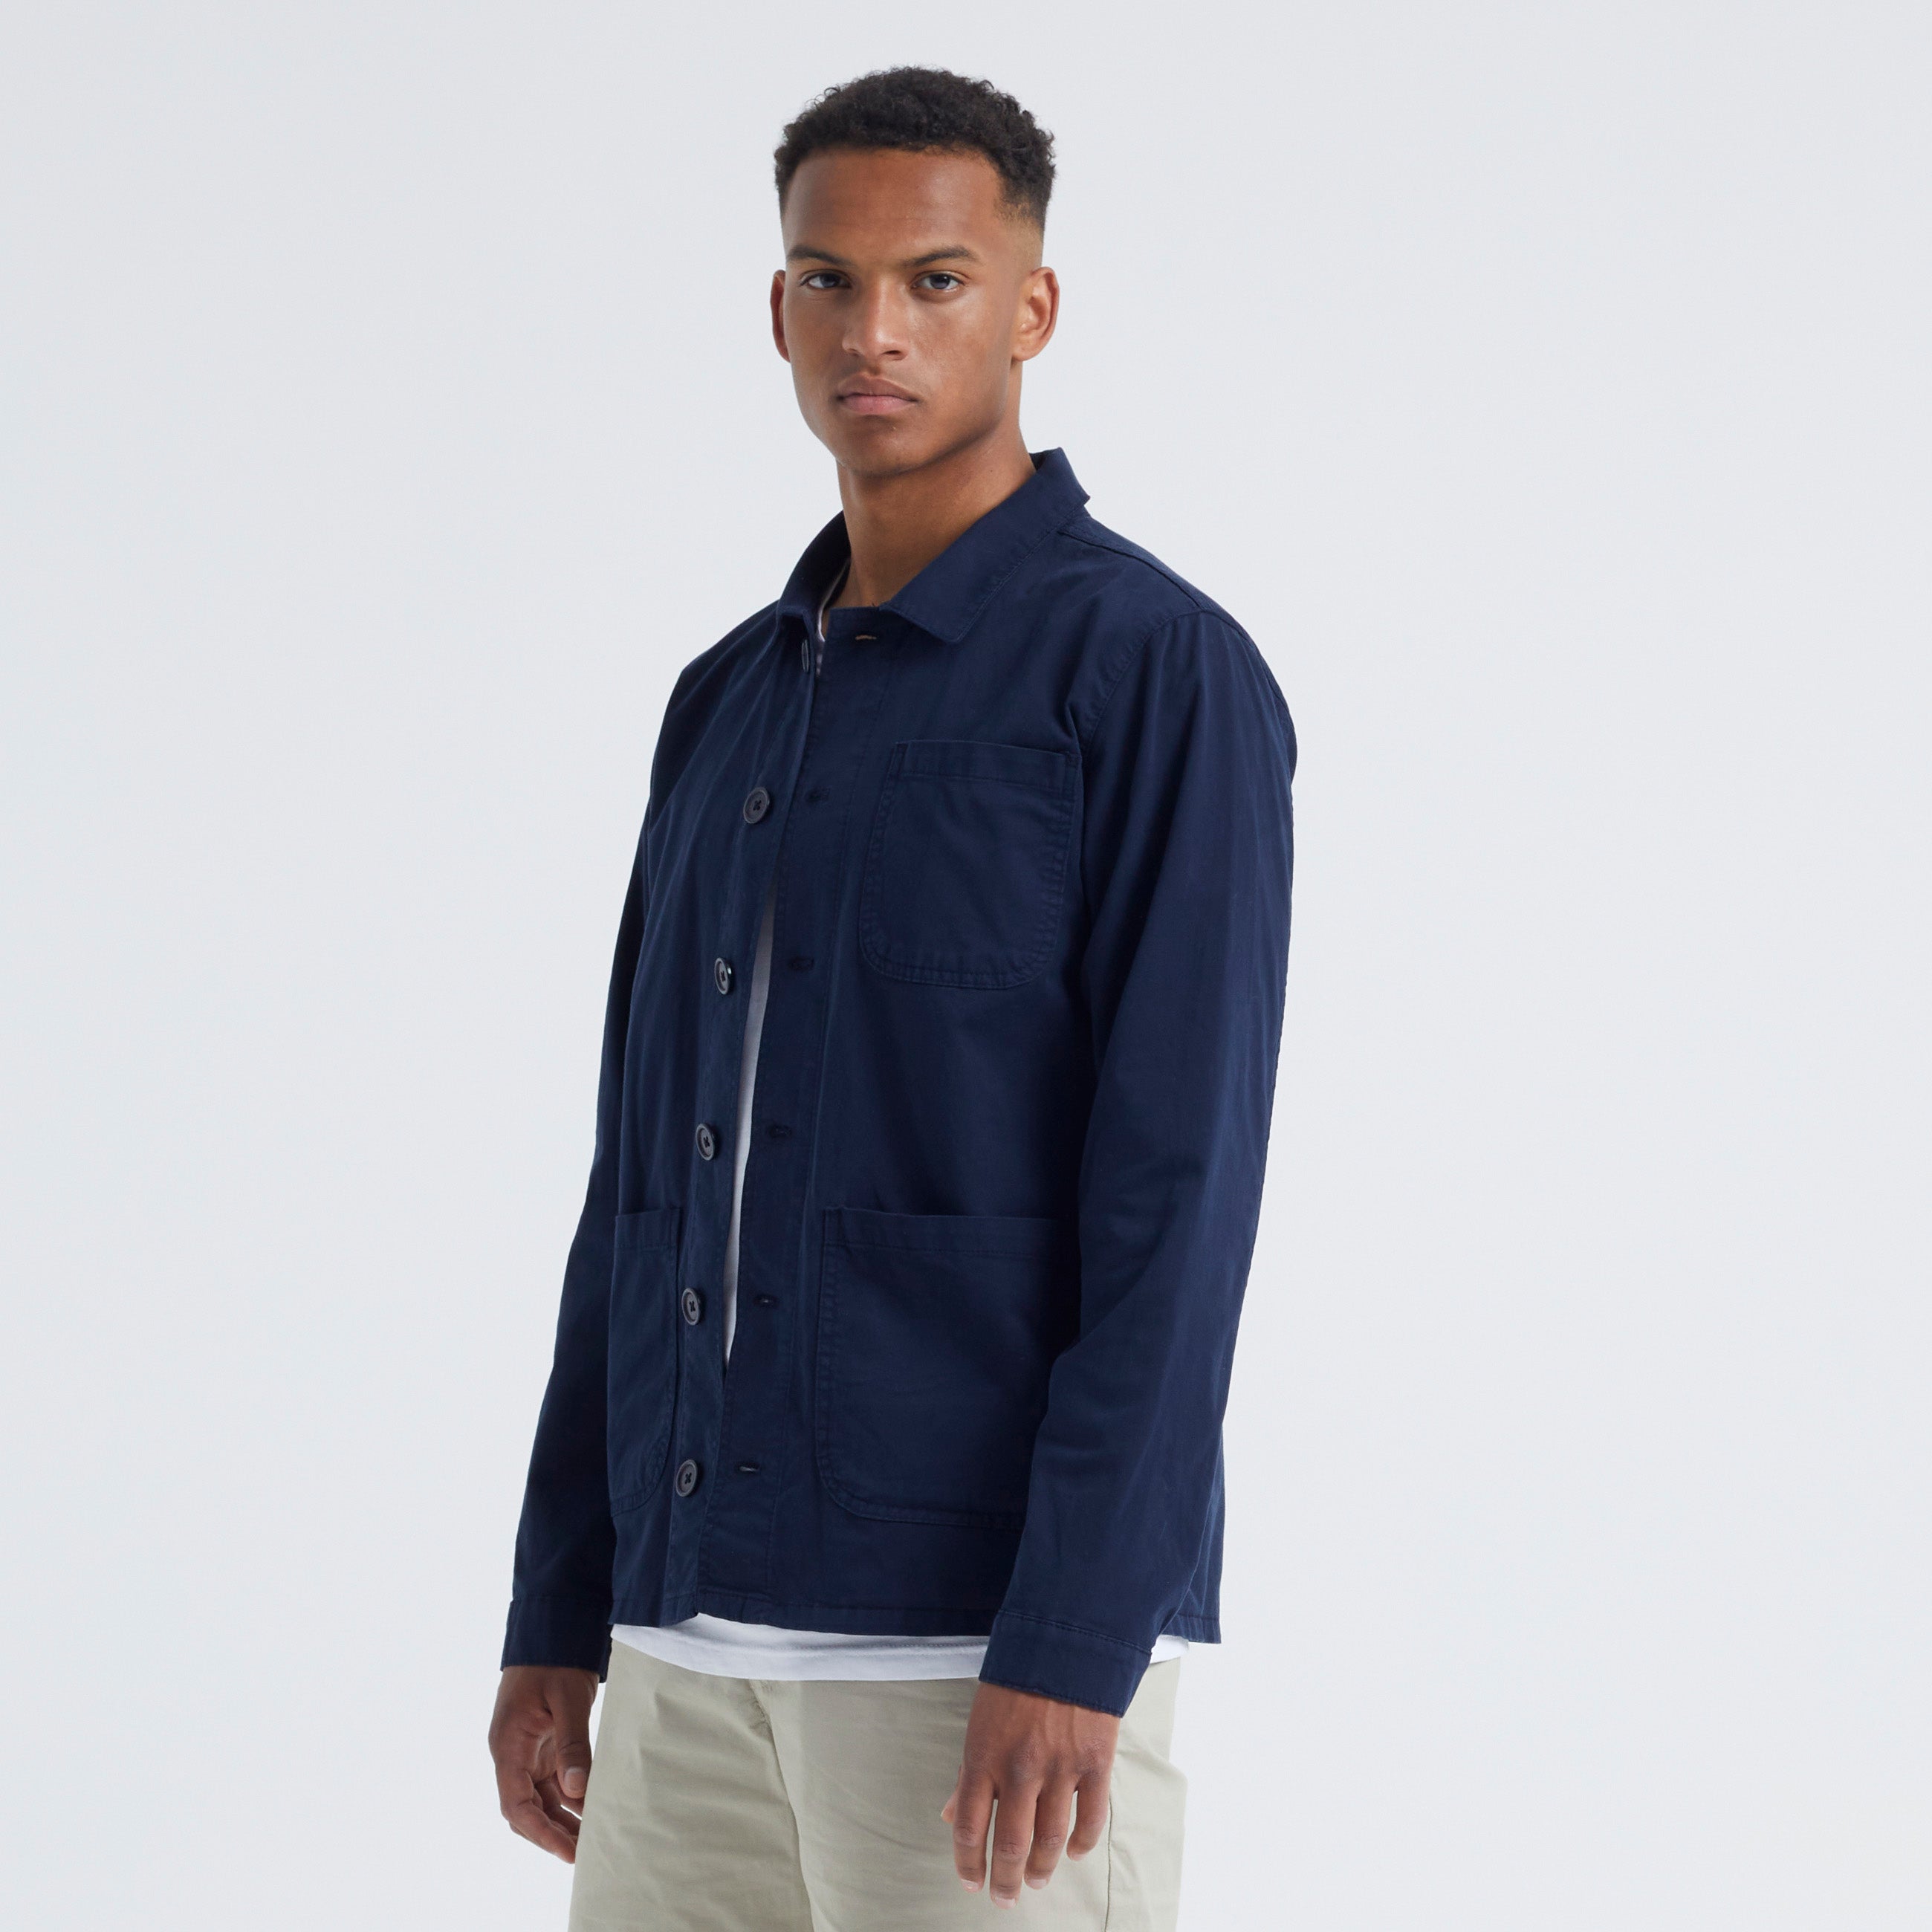 By Garment Makers The Organic Workwear Jacke GOTS Jacke 3096 Navy Blazer